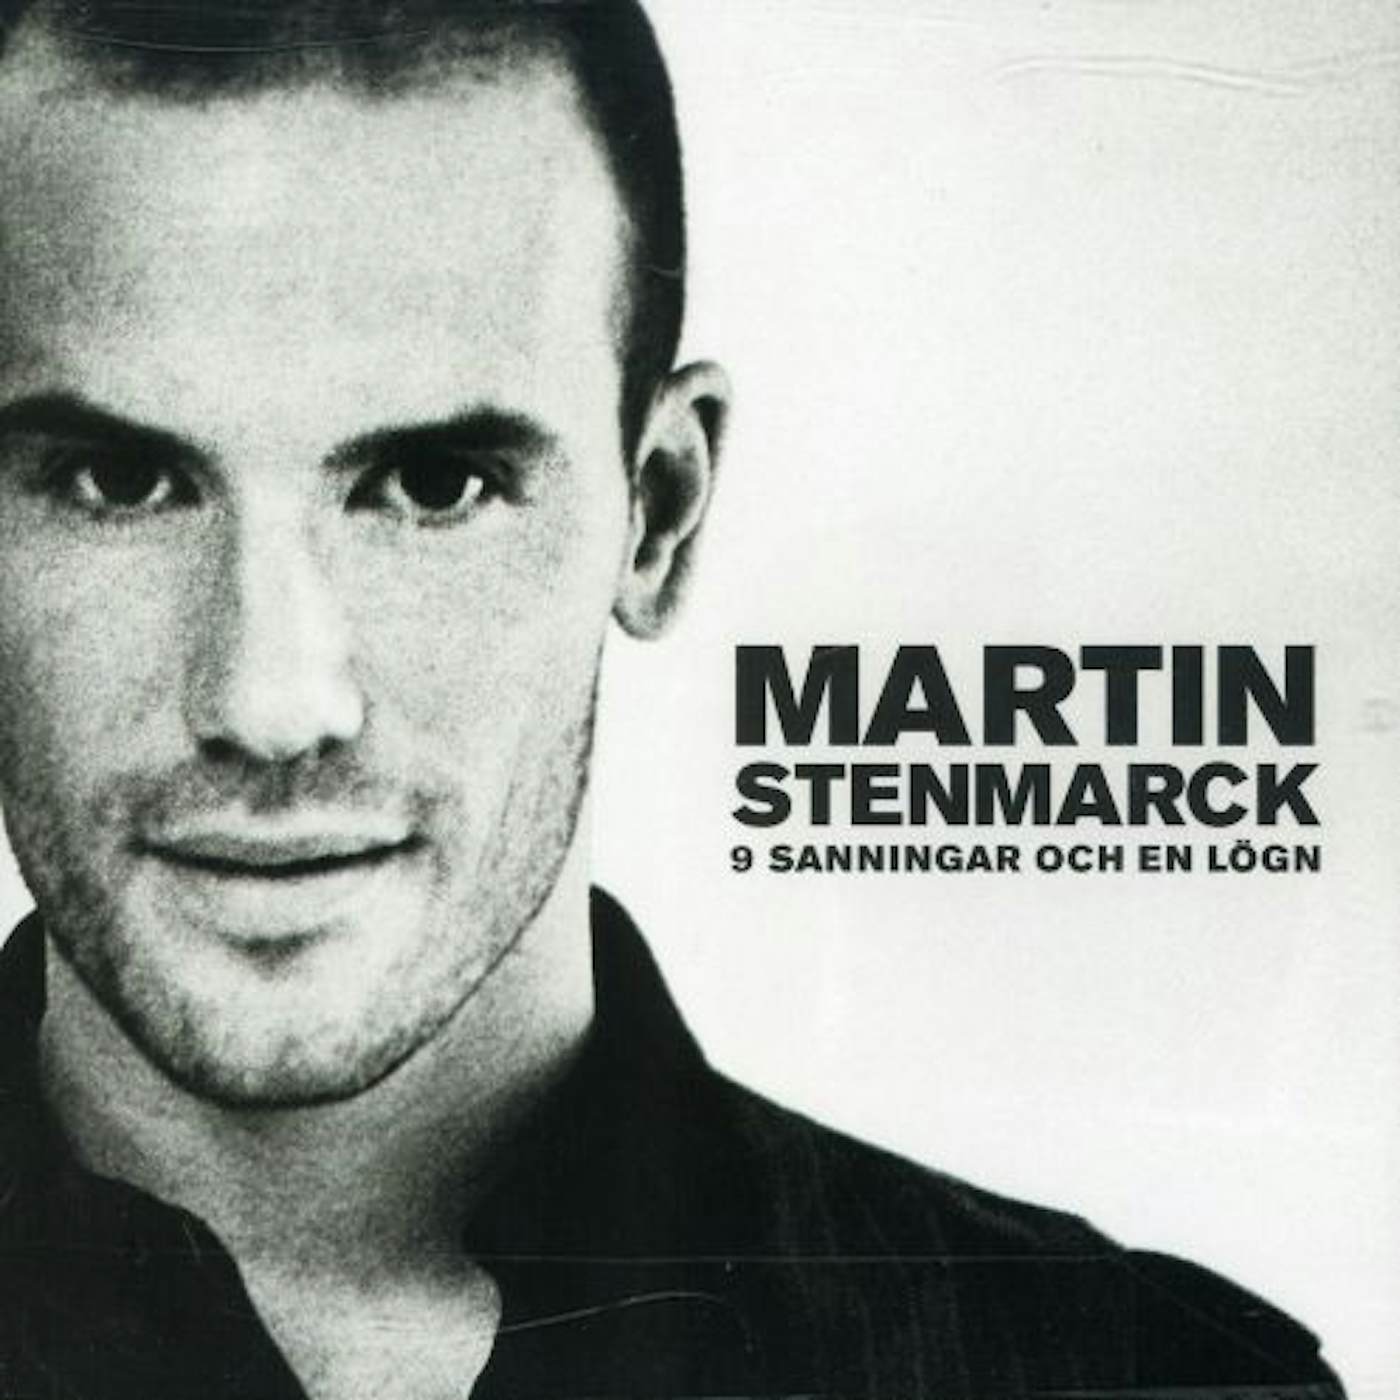 Martin Stenmarck NIO SANNINGAR OCH EN LOGN CD